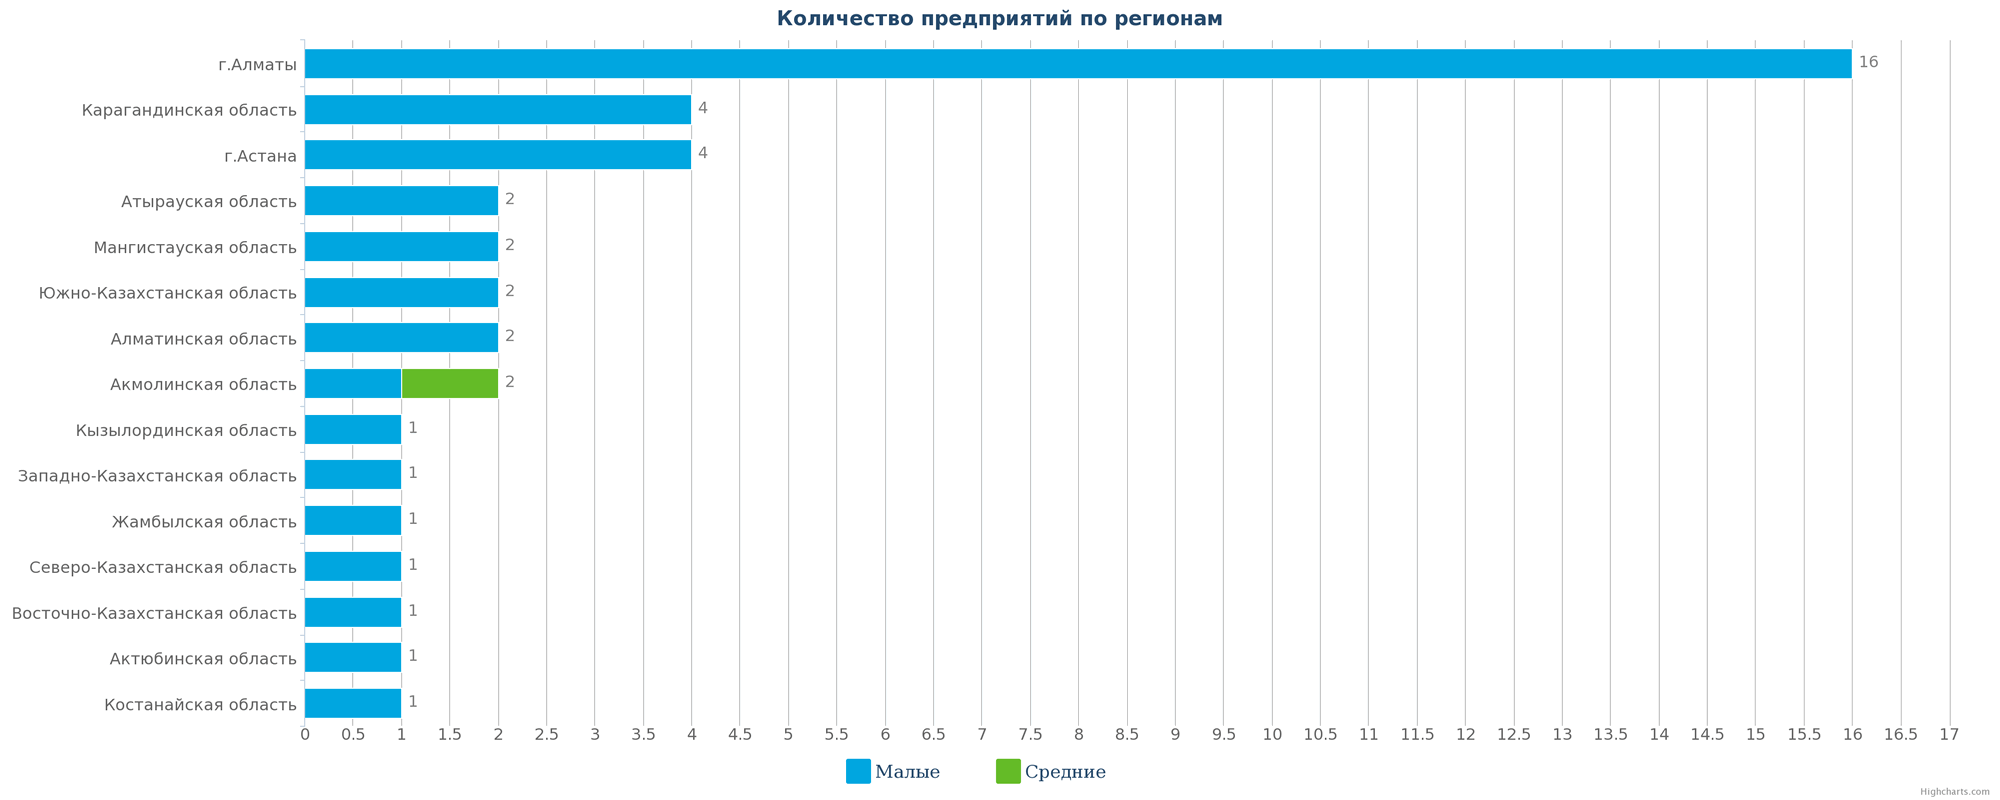 Количество новых промышленных компаний по регионам Казахстана